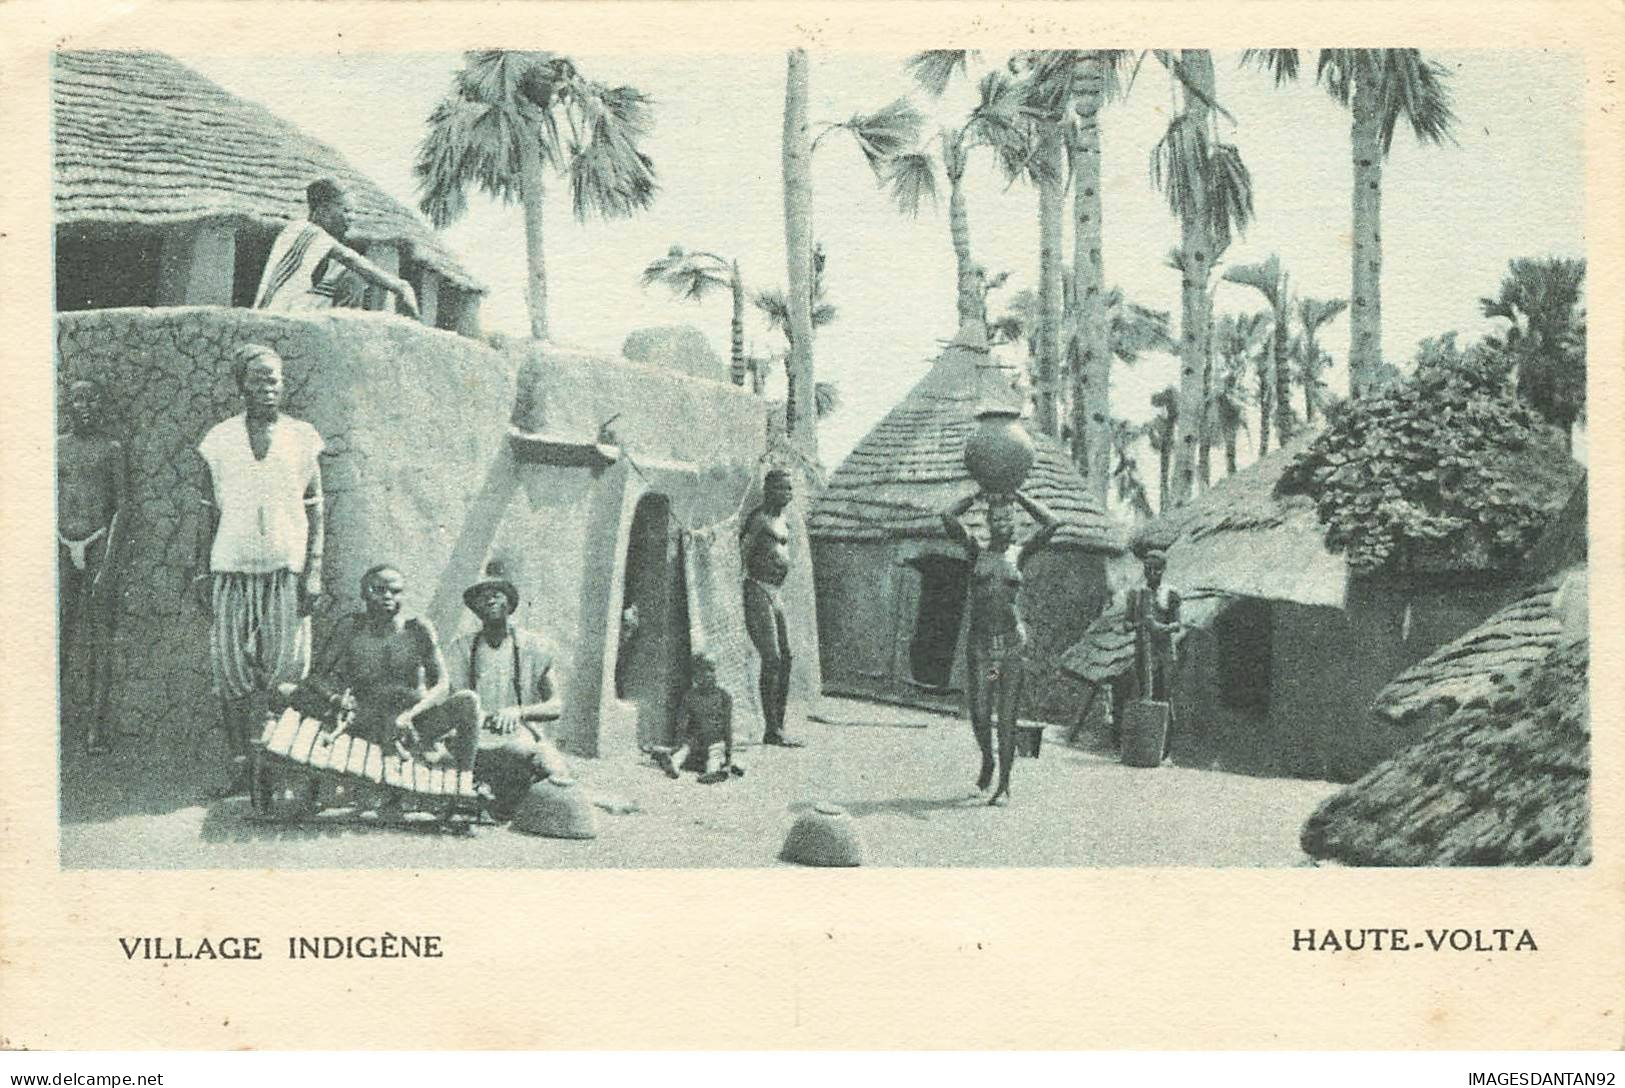 AFRIQUE OCCIDENTALE FRANCAISE #27802 VILLAGE INDIGENE FEMME SEINS NUS EXPOSITION COLONAILE 1931 - Non Classés